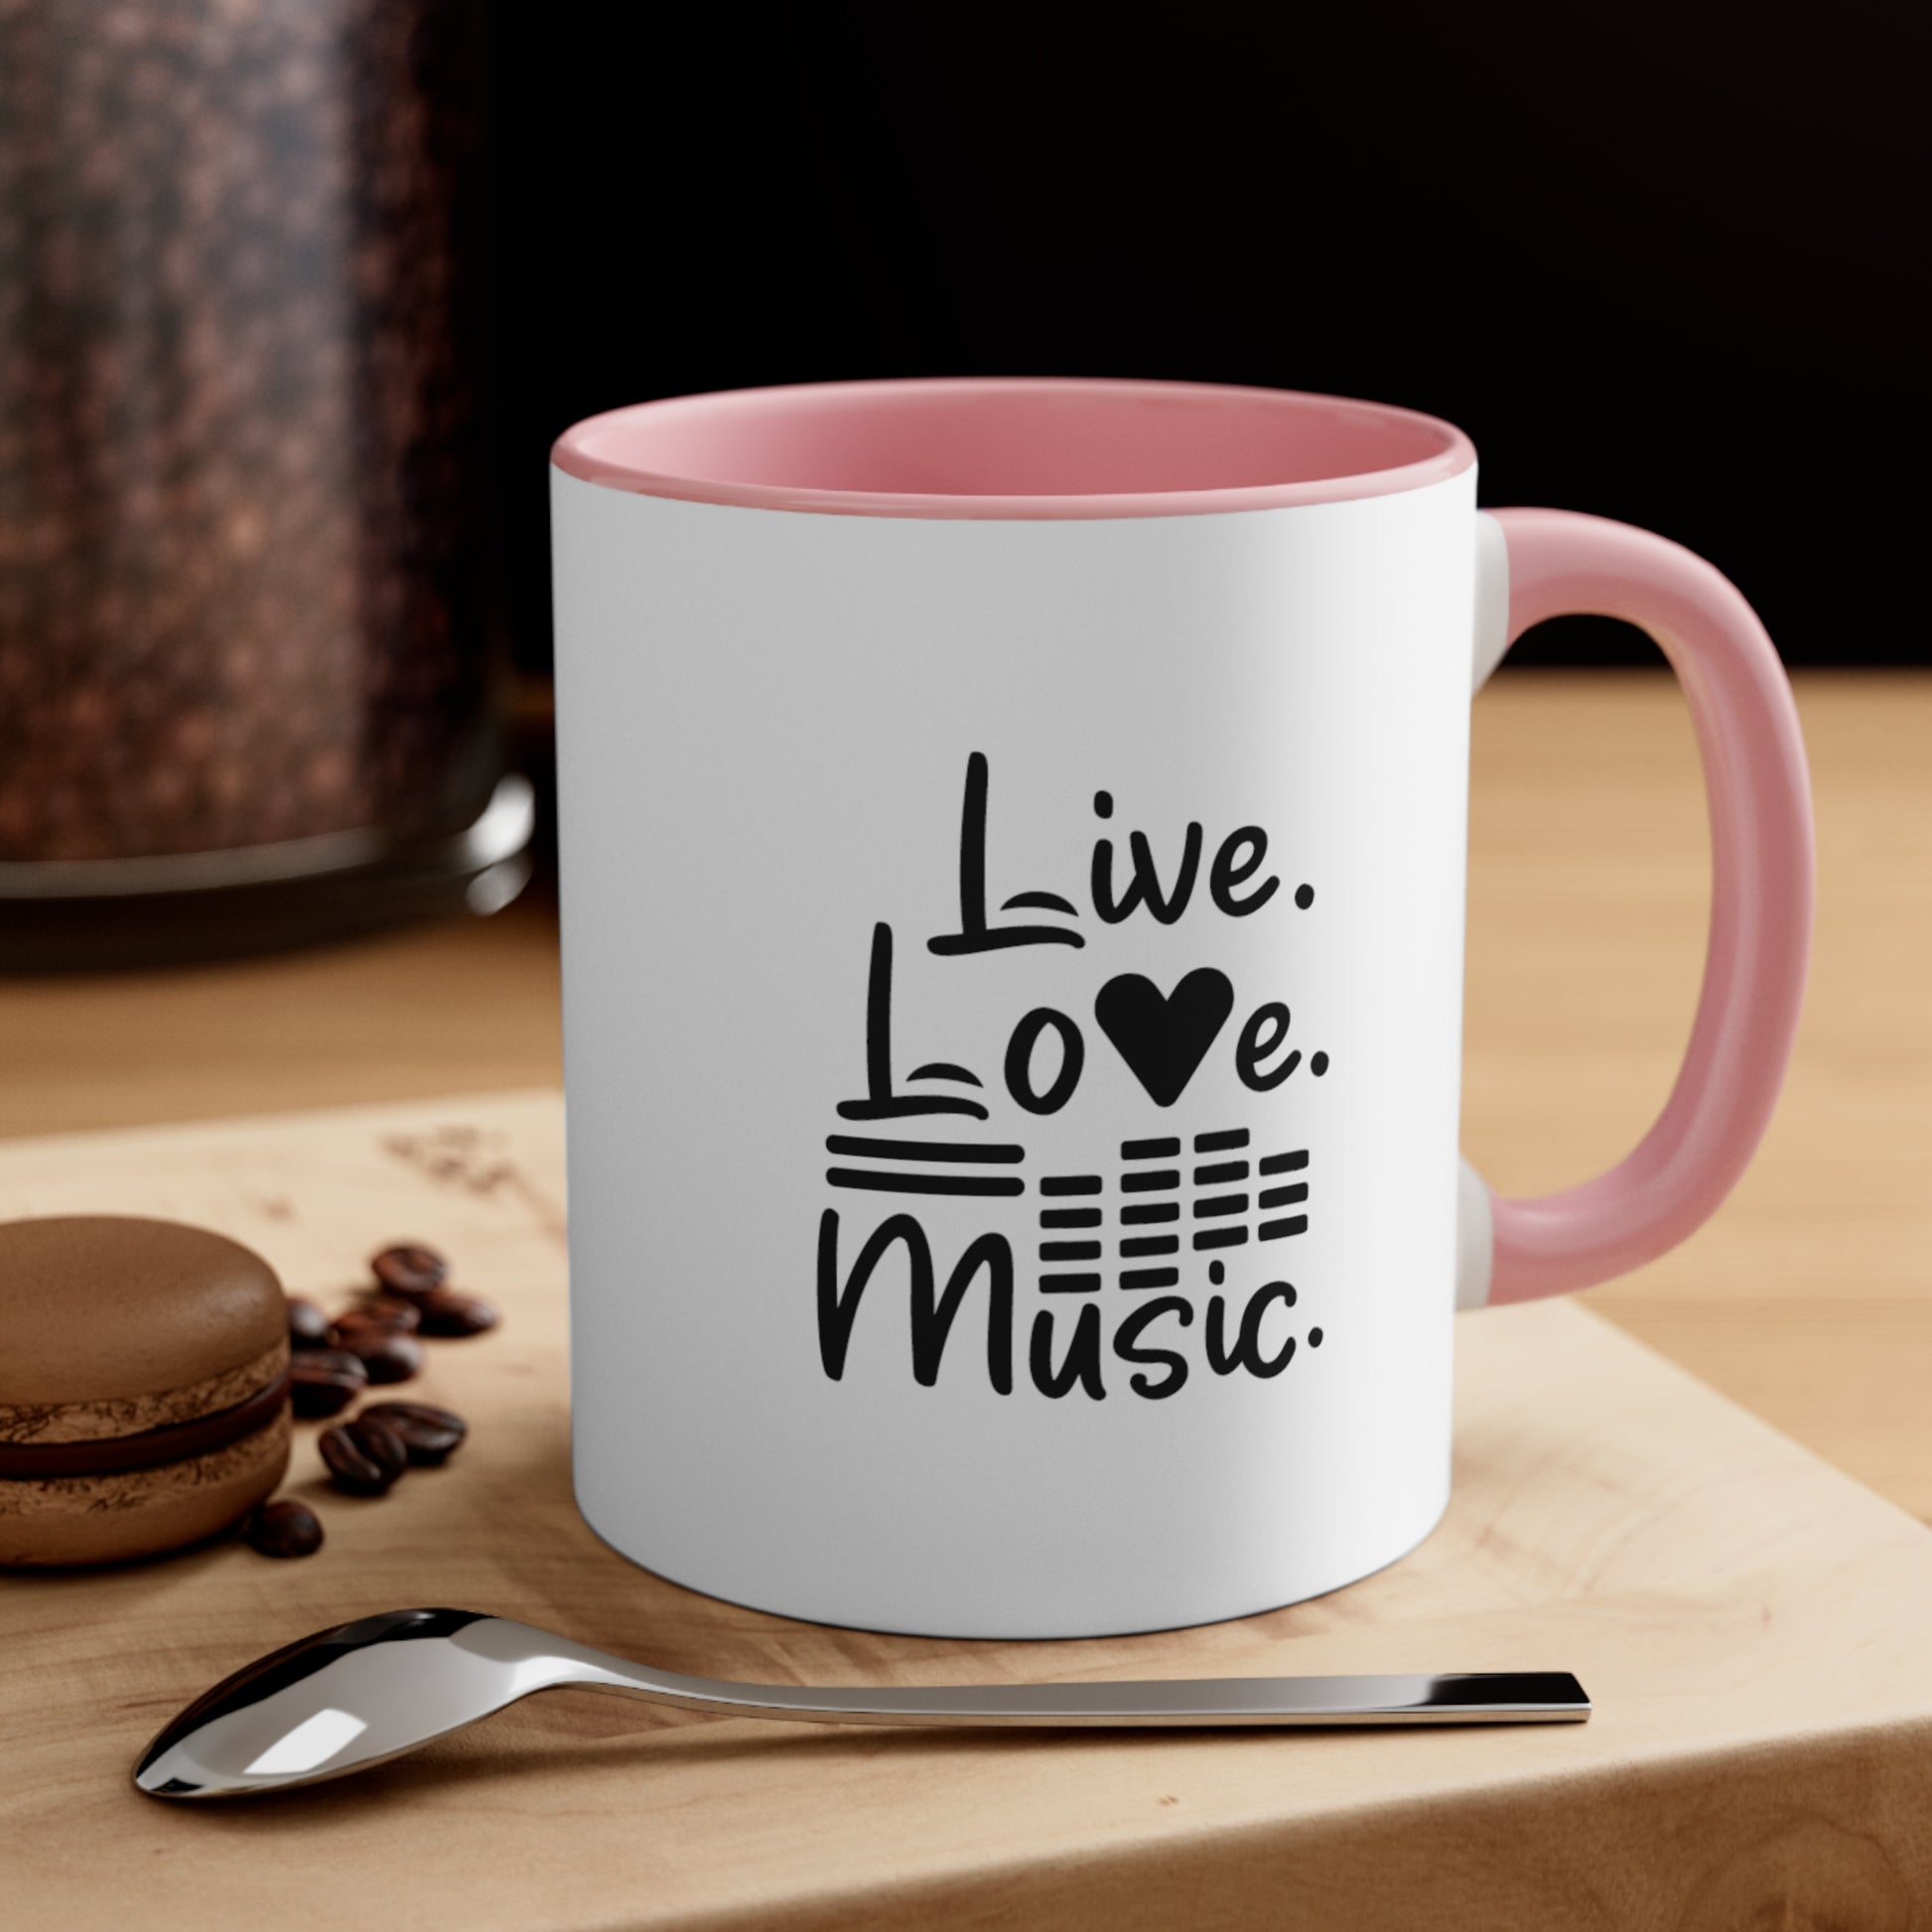 Music Lovers Mugs: Live Love Music